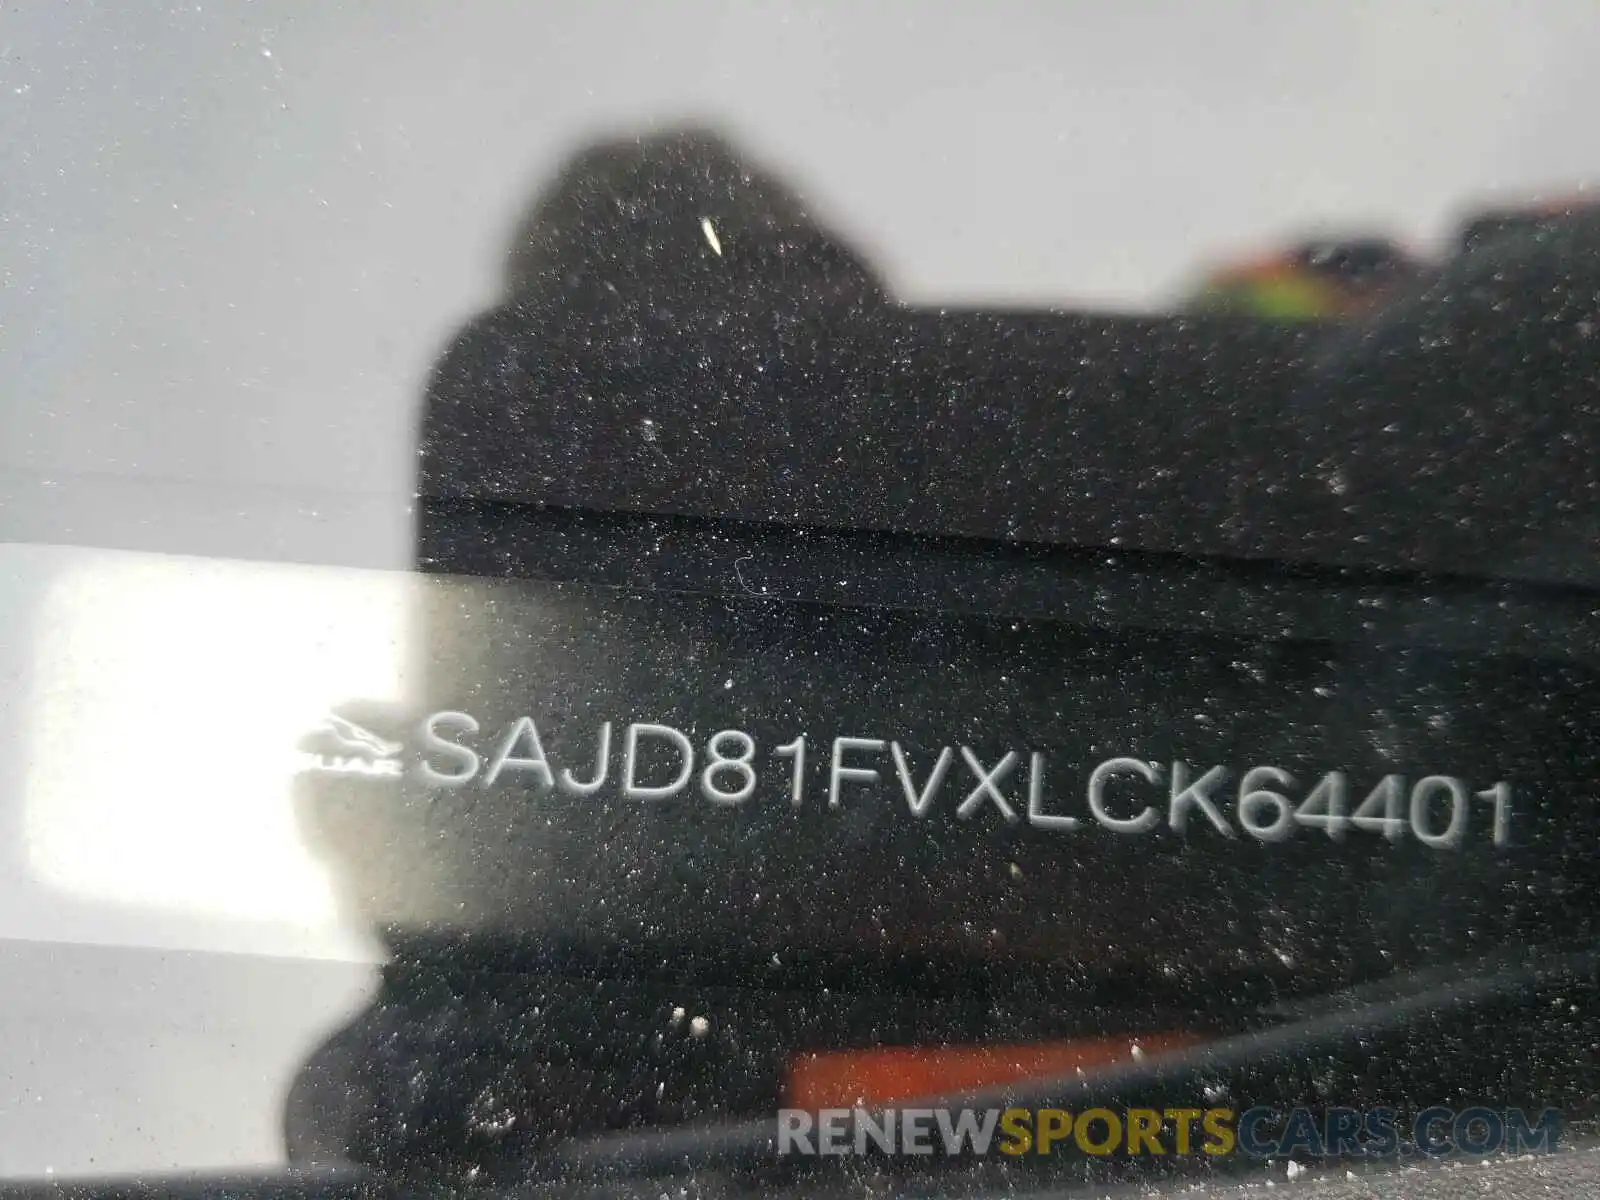 10 Photograph of a damaged car SAJD81FVXLCK64401 JAGUAR F-TYPE 2020